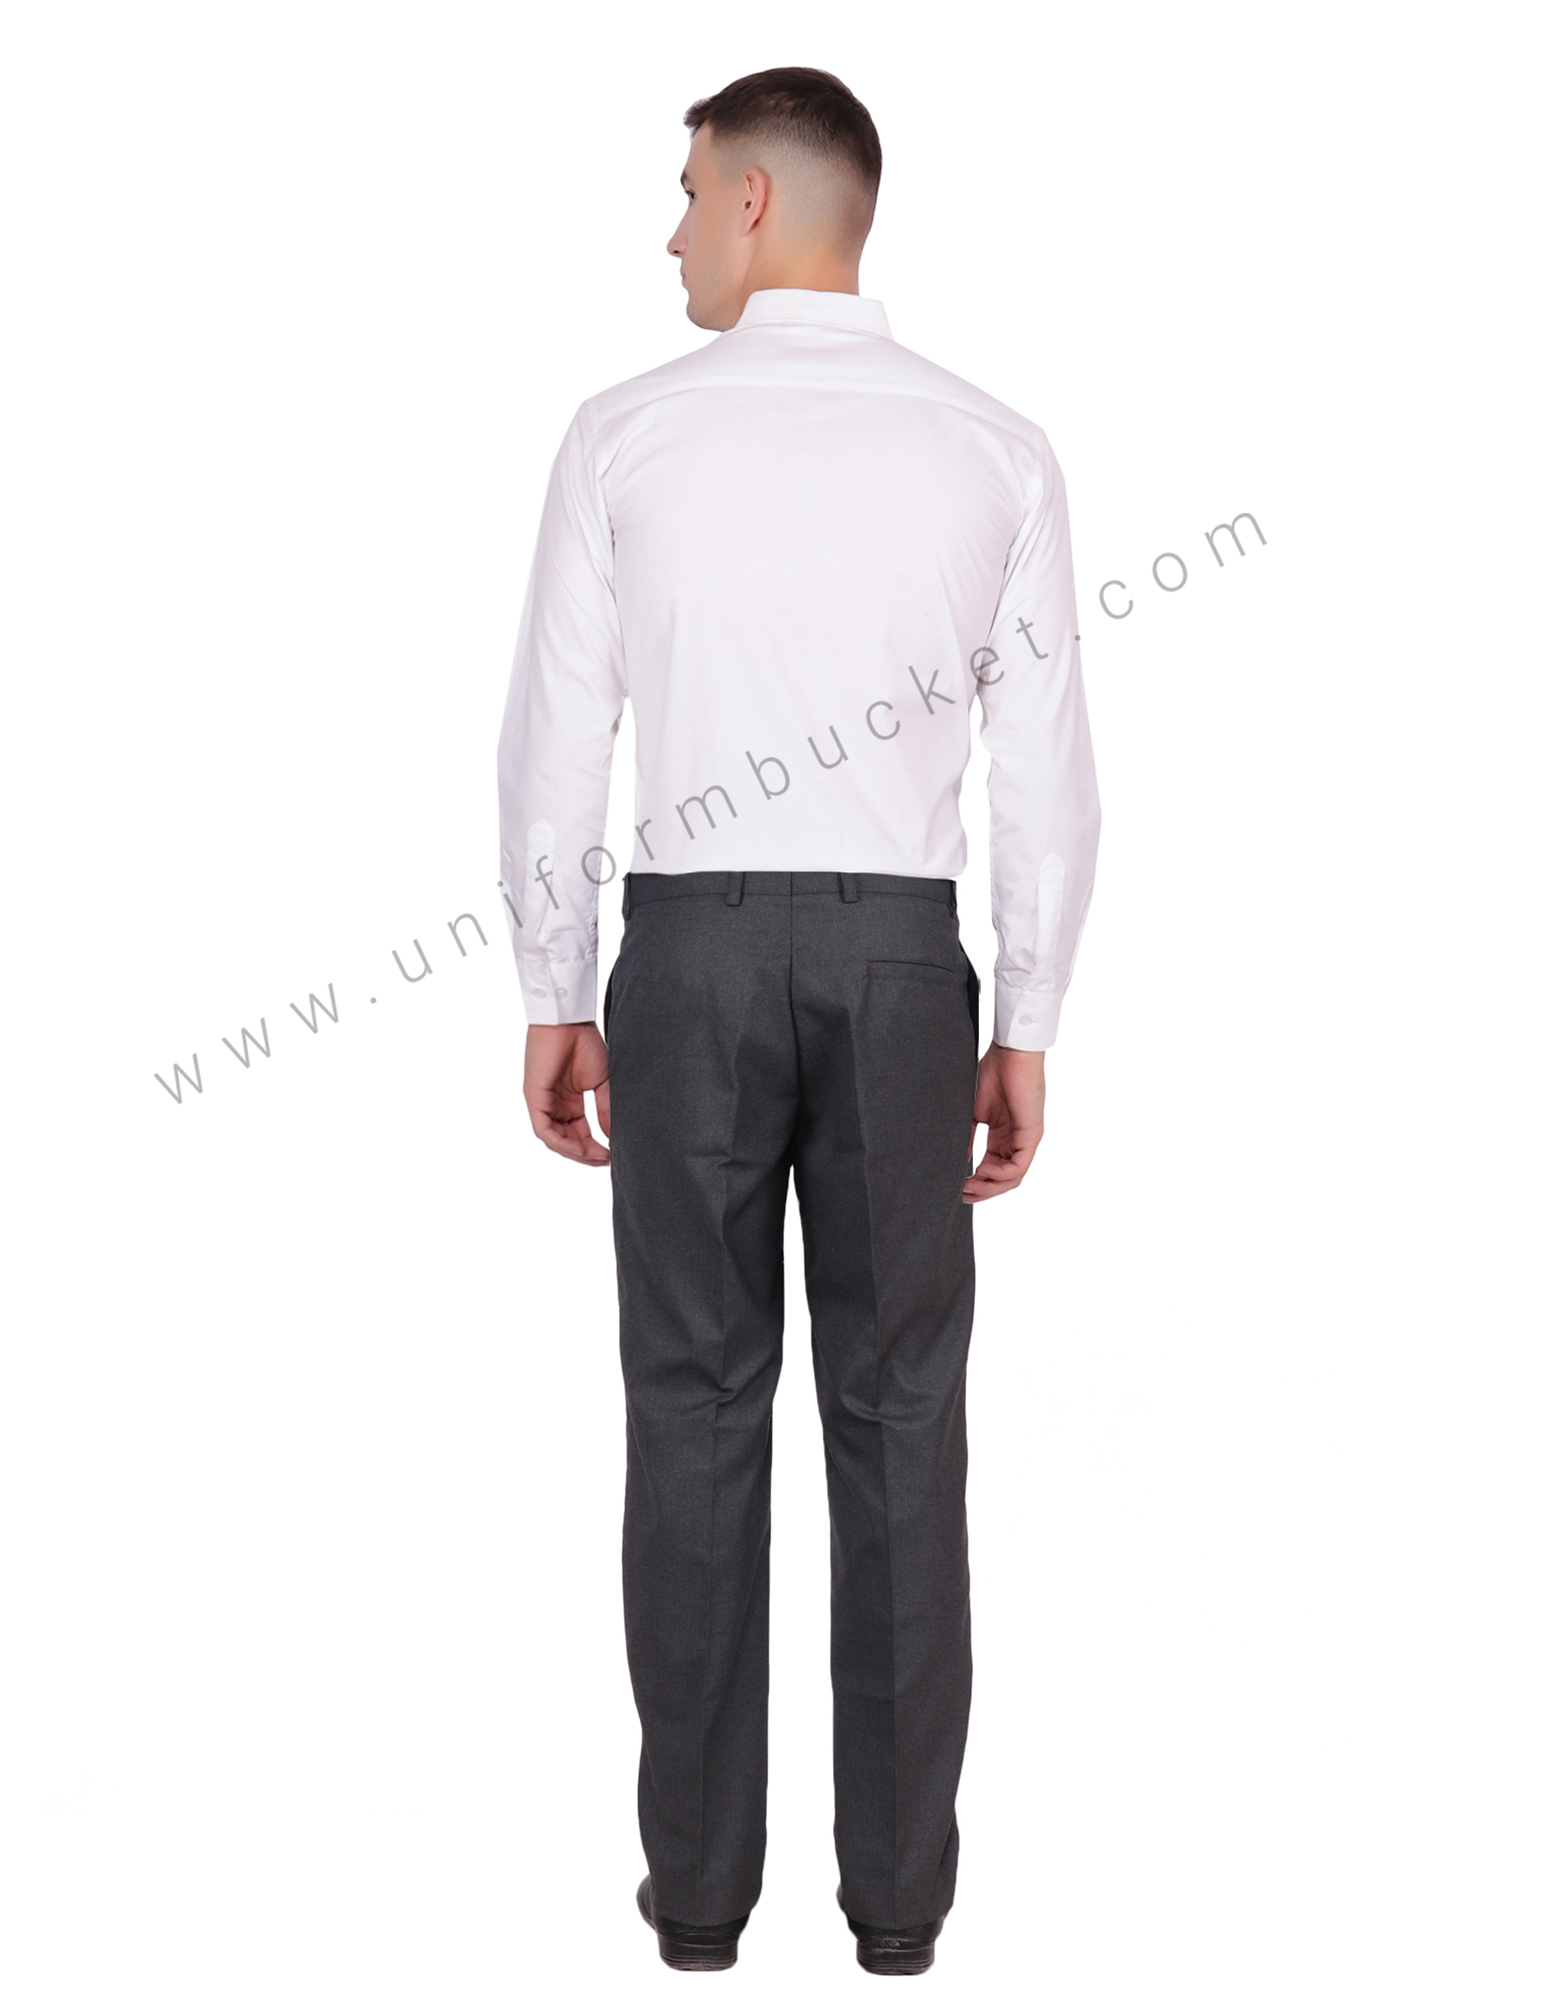 SREY Regular Fit Men Grey Trousers  Buy SREY Regular Fit Men Grey Trousers  Online at Best Prices in India  Flipkartcom